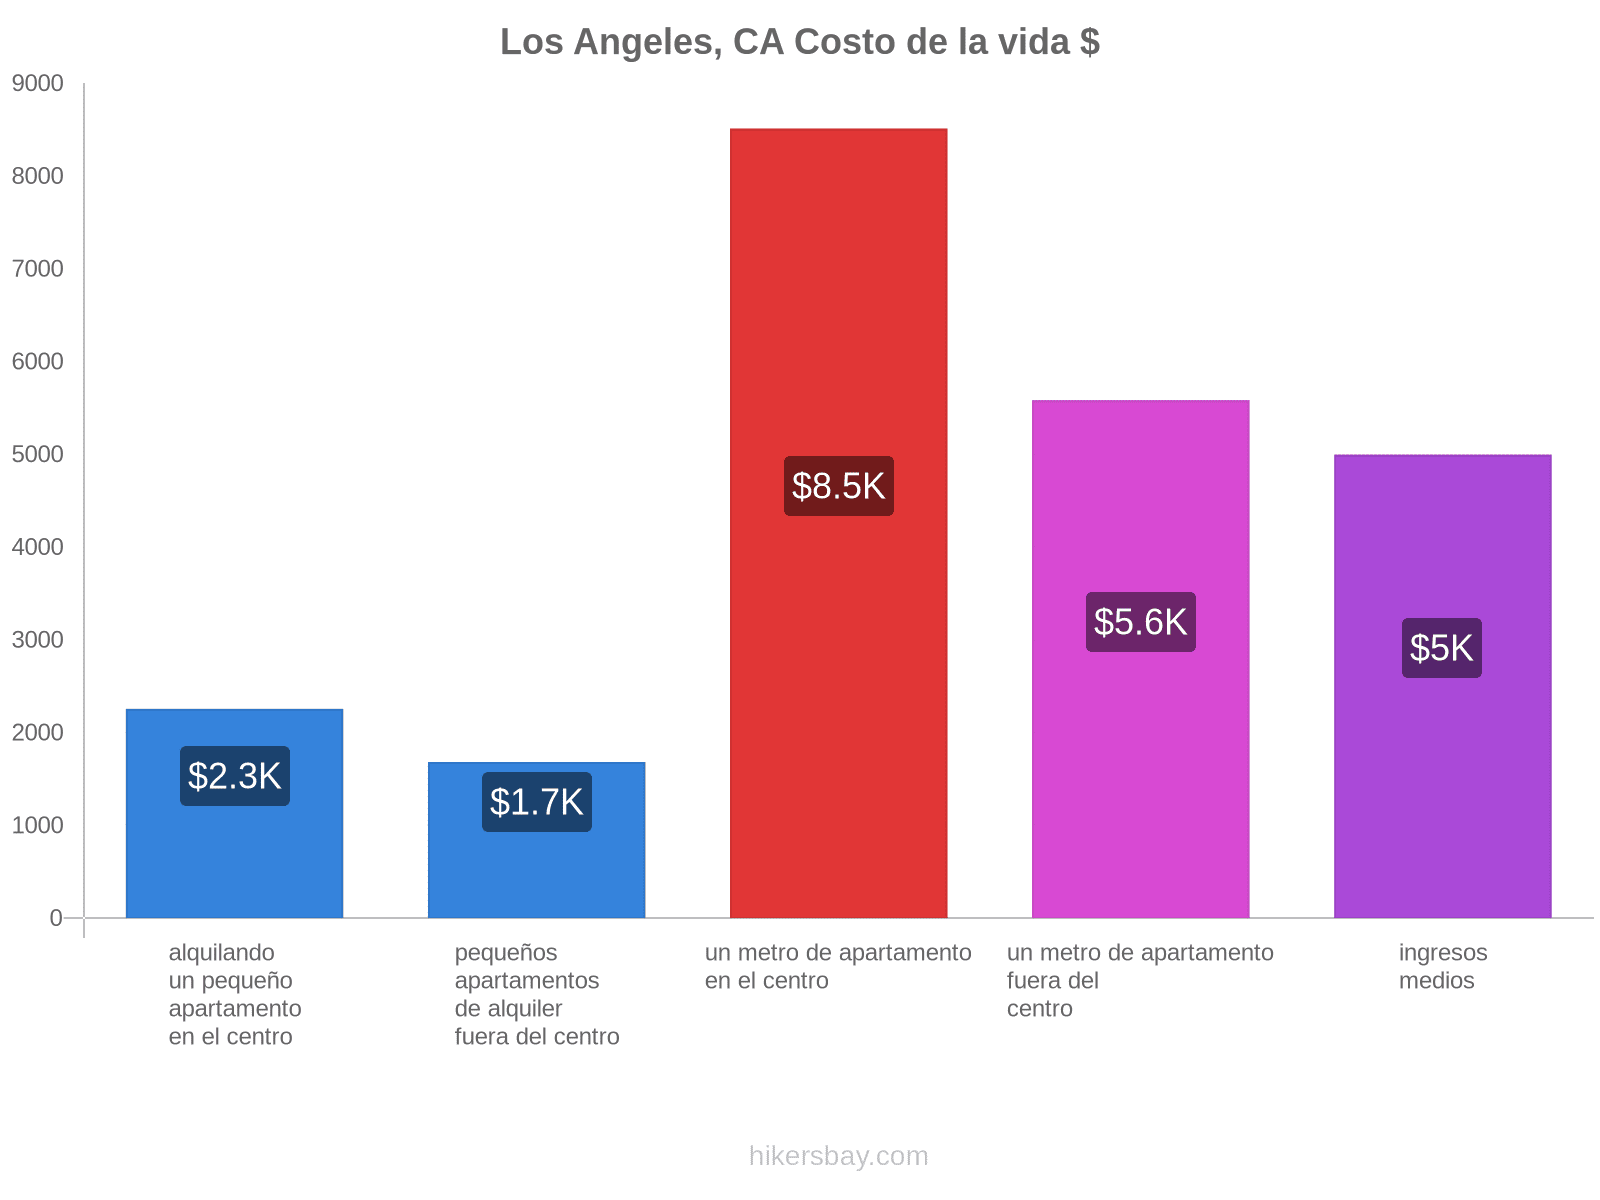 Los Angeles, CA costo de la vida hikersbay.com